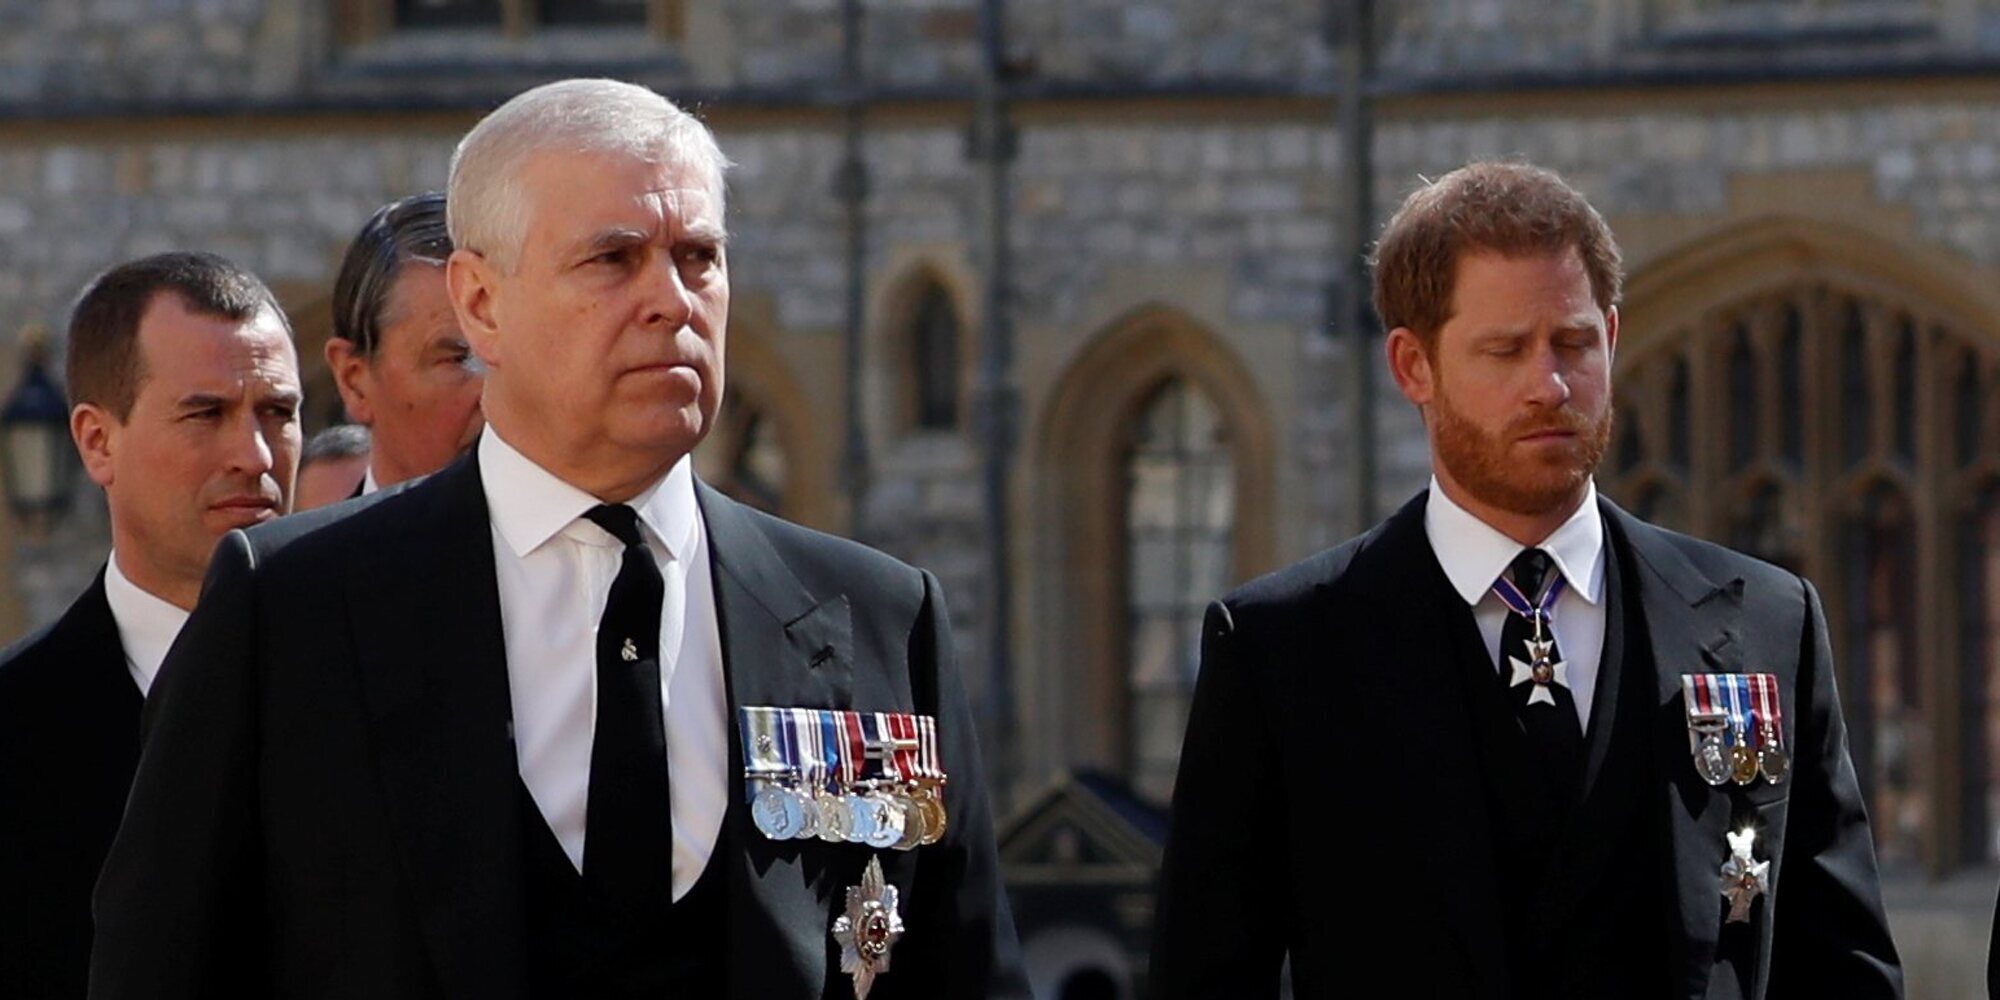 Presiones a la Reina Isabel para destituir a los Príncipes Harry y Andrés como Consejeros de Estado